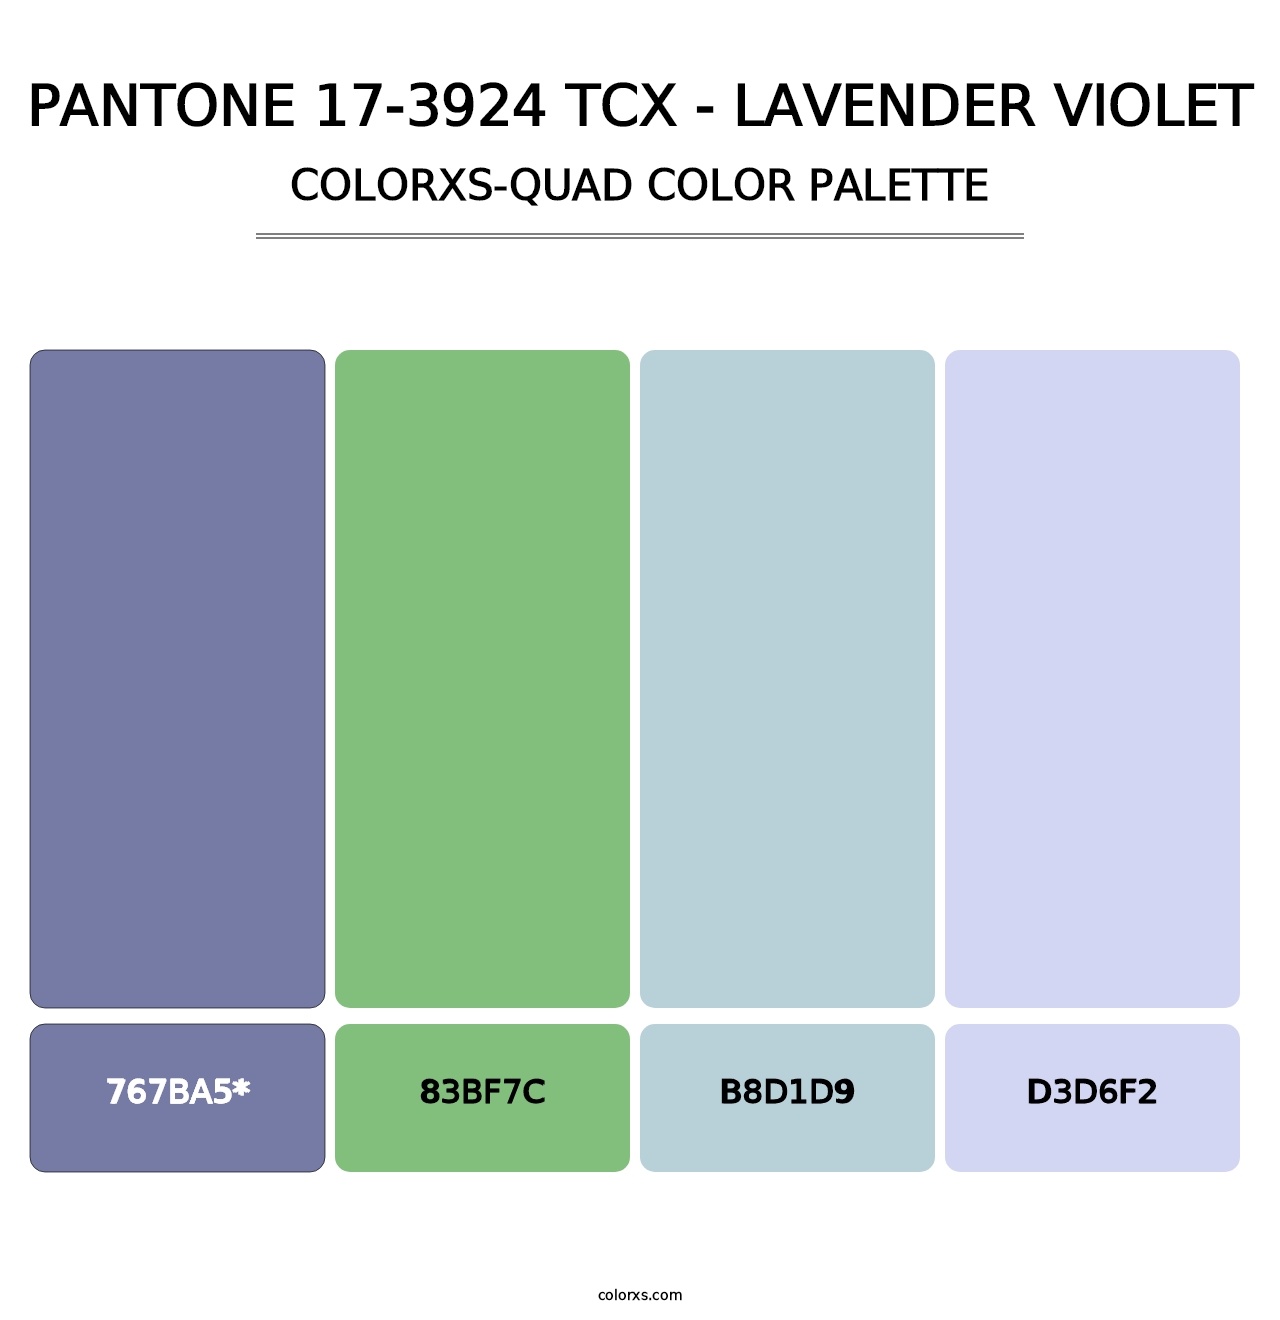 PANTONE 17-3924 TCX - Lavender Violet - Colorxs Quad Palette